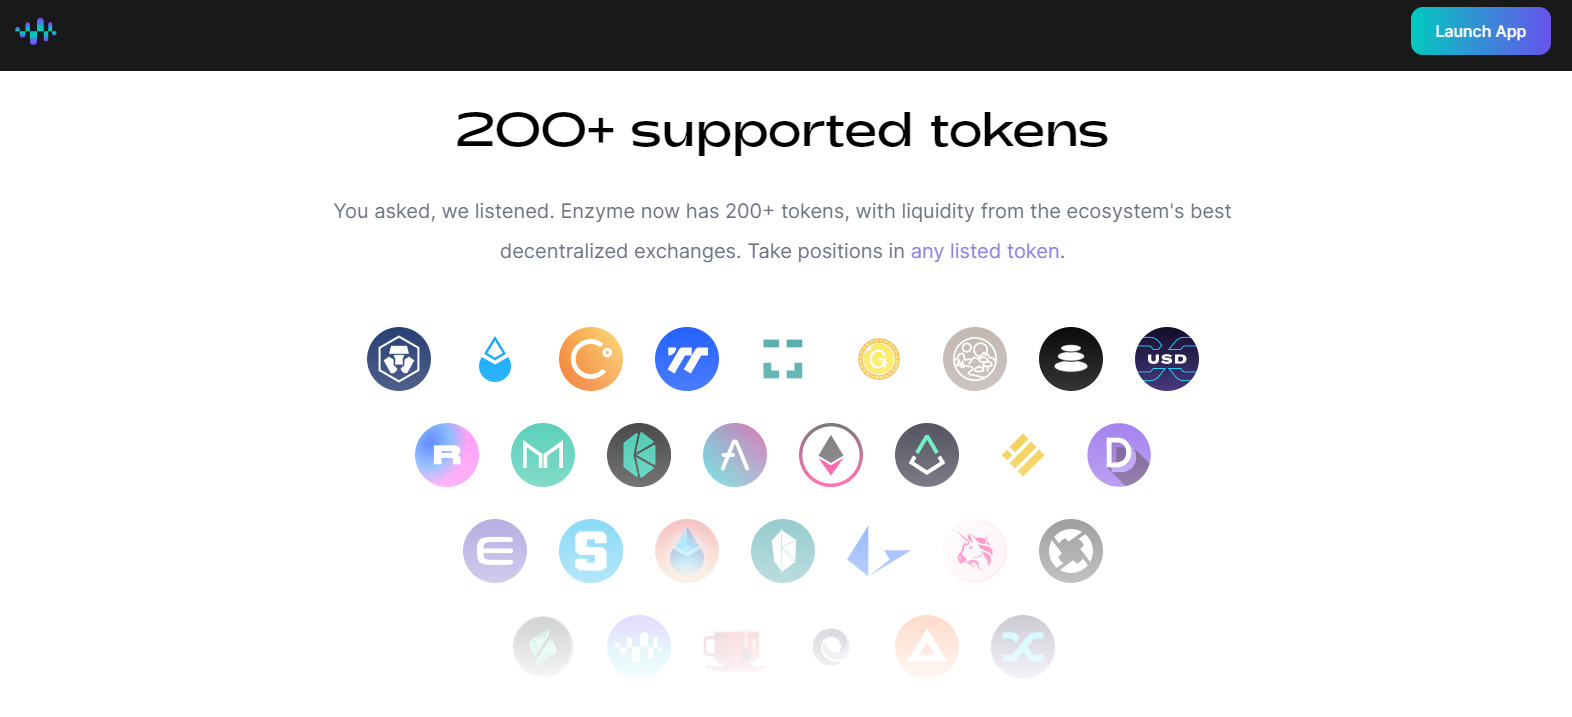 Hơn 200 token được hỗ trợ